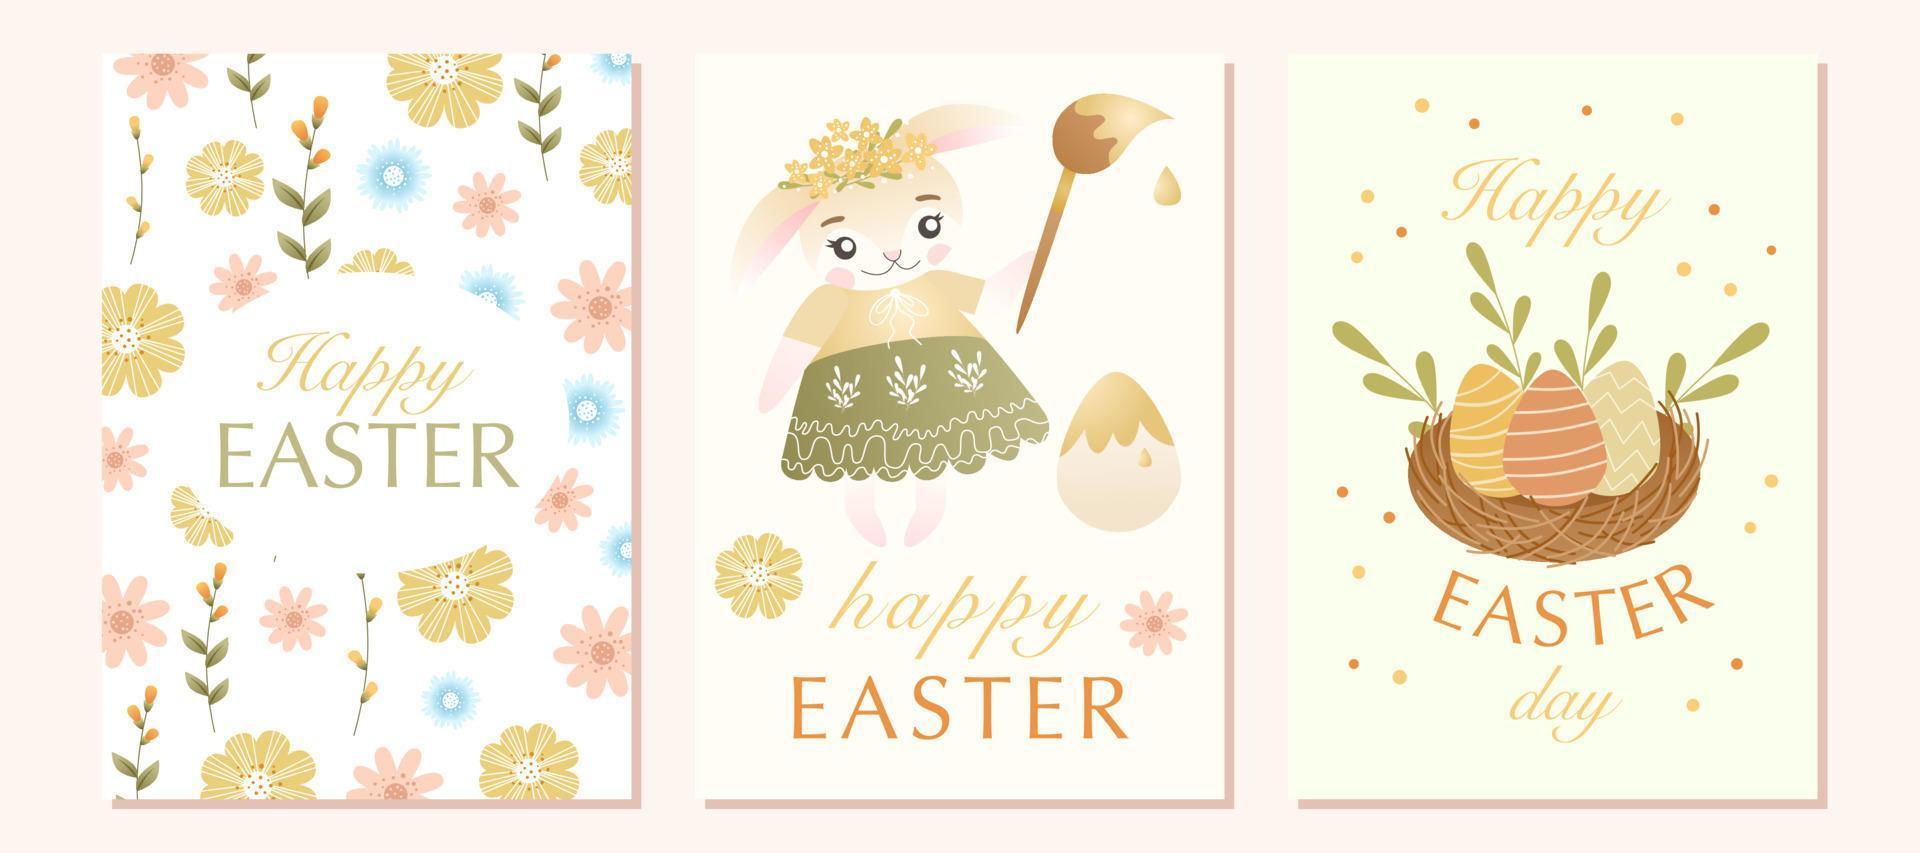 Pascua de Resurrección saludo tarjeta conjunto con linda conejito personaje, de colores huevo, primavera flores, verde hojas. bueno para primavera y Pascua de Resurrección saludo tarjetas, carteles, para niños diseño y pancartas vector ilustración.